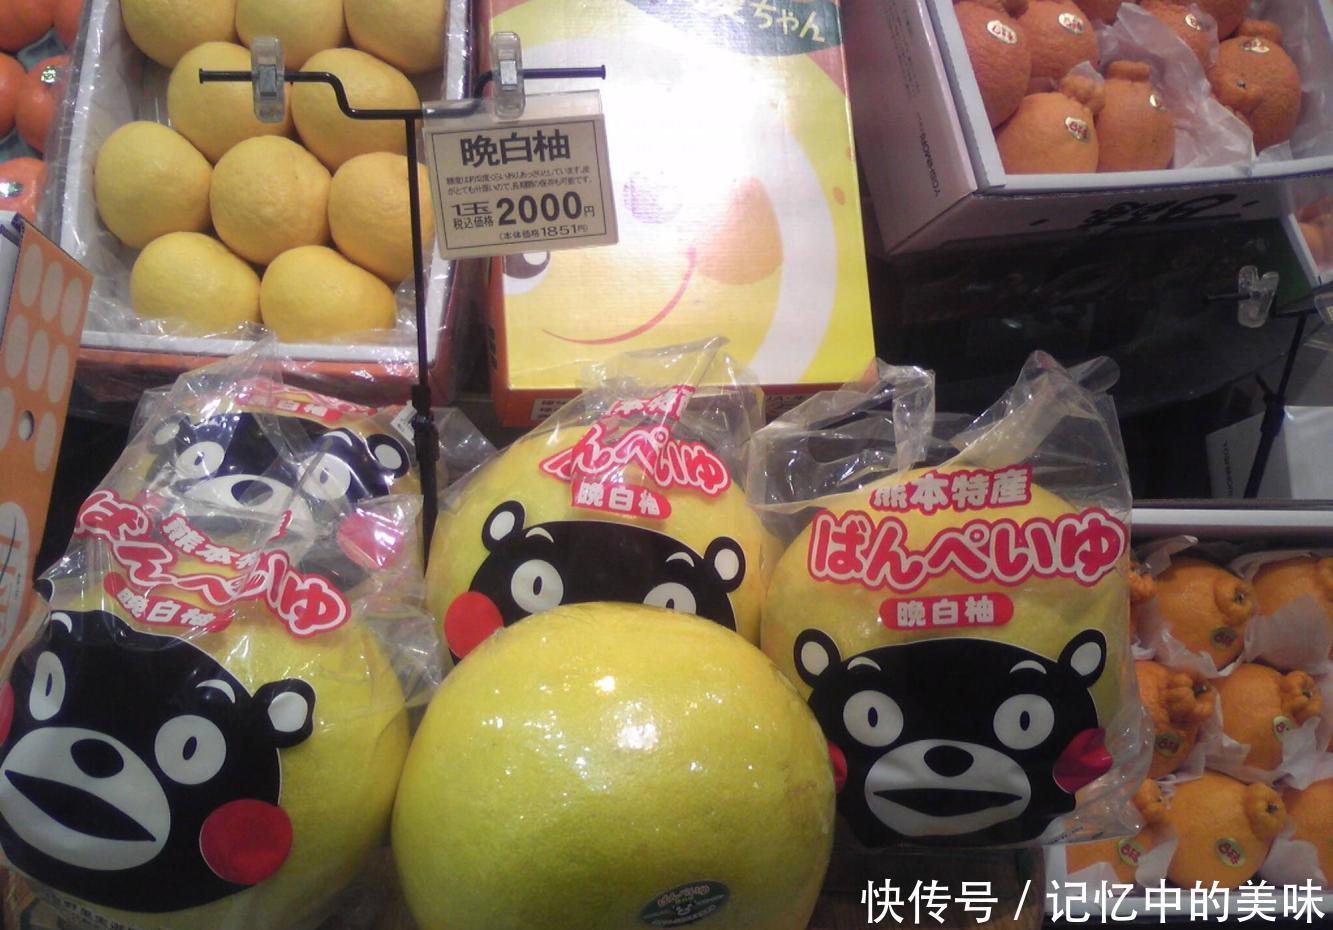 中国游客在日本肆意买水果, 结账时收银员很